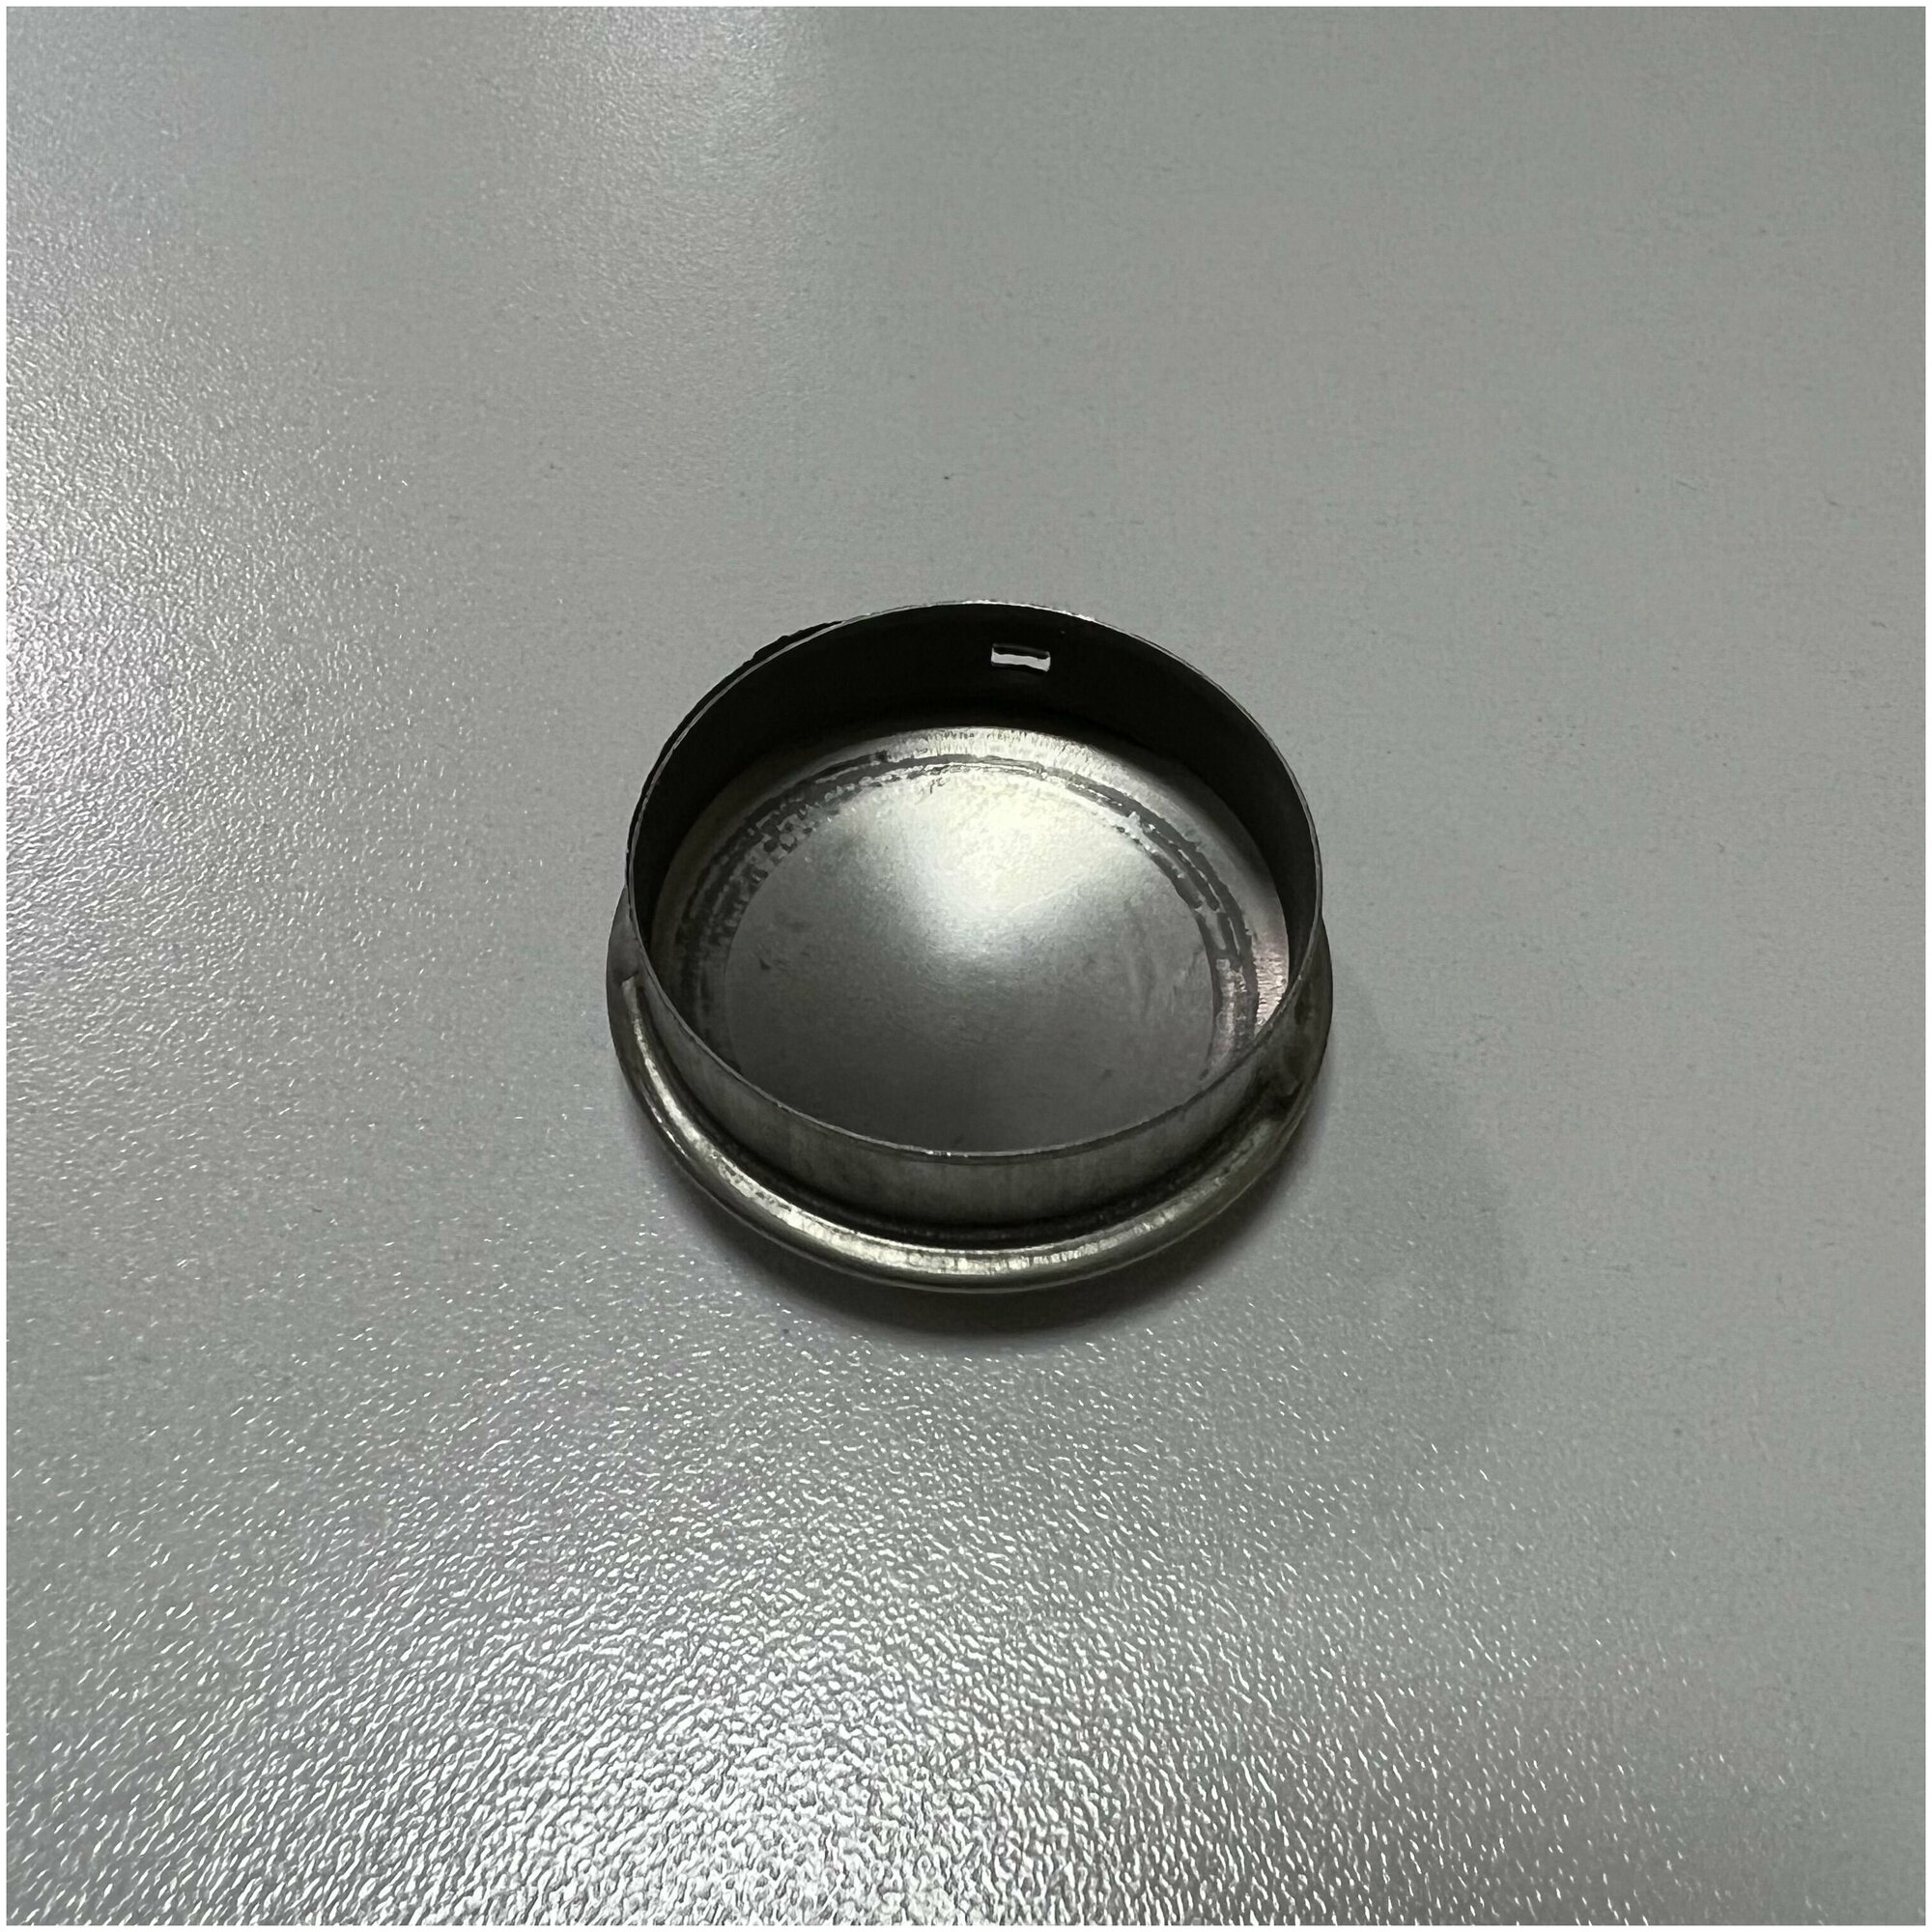 Заглушка внутренняя штампованная натеко для ригеля/трубы/поручня из нержавеющей стали AISI 304, 50.8 мм (Комплектующие для ограждений) (4 шт.)